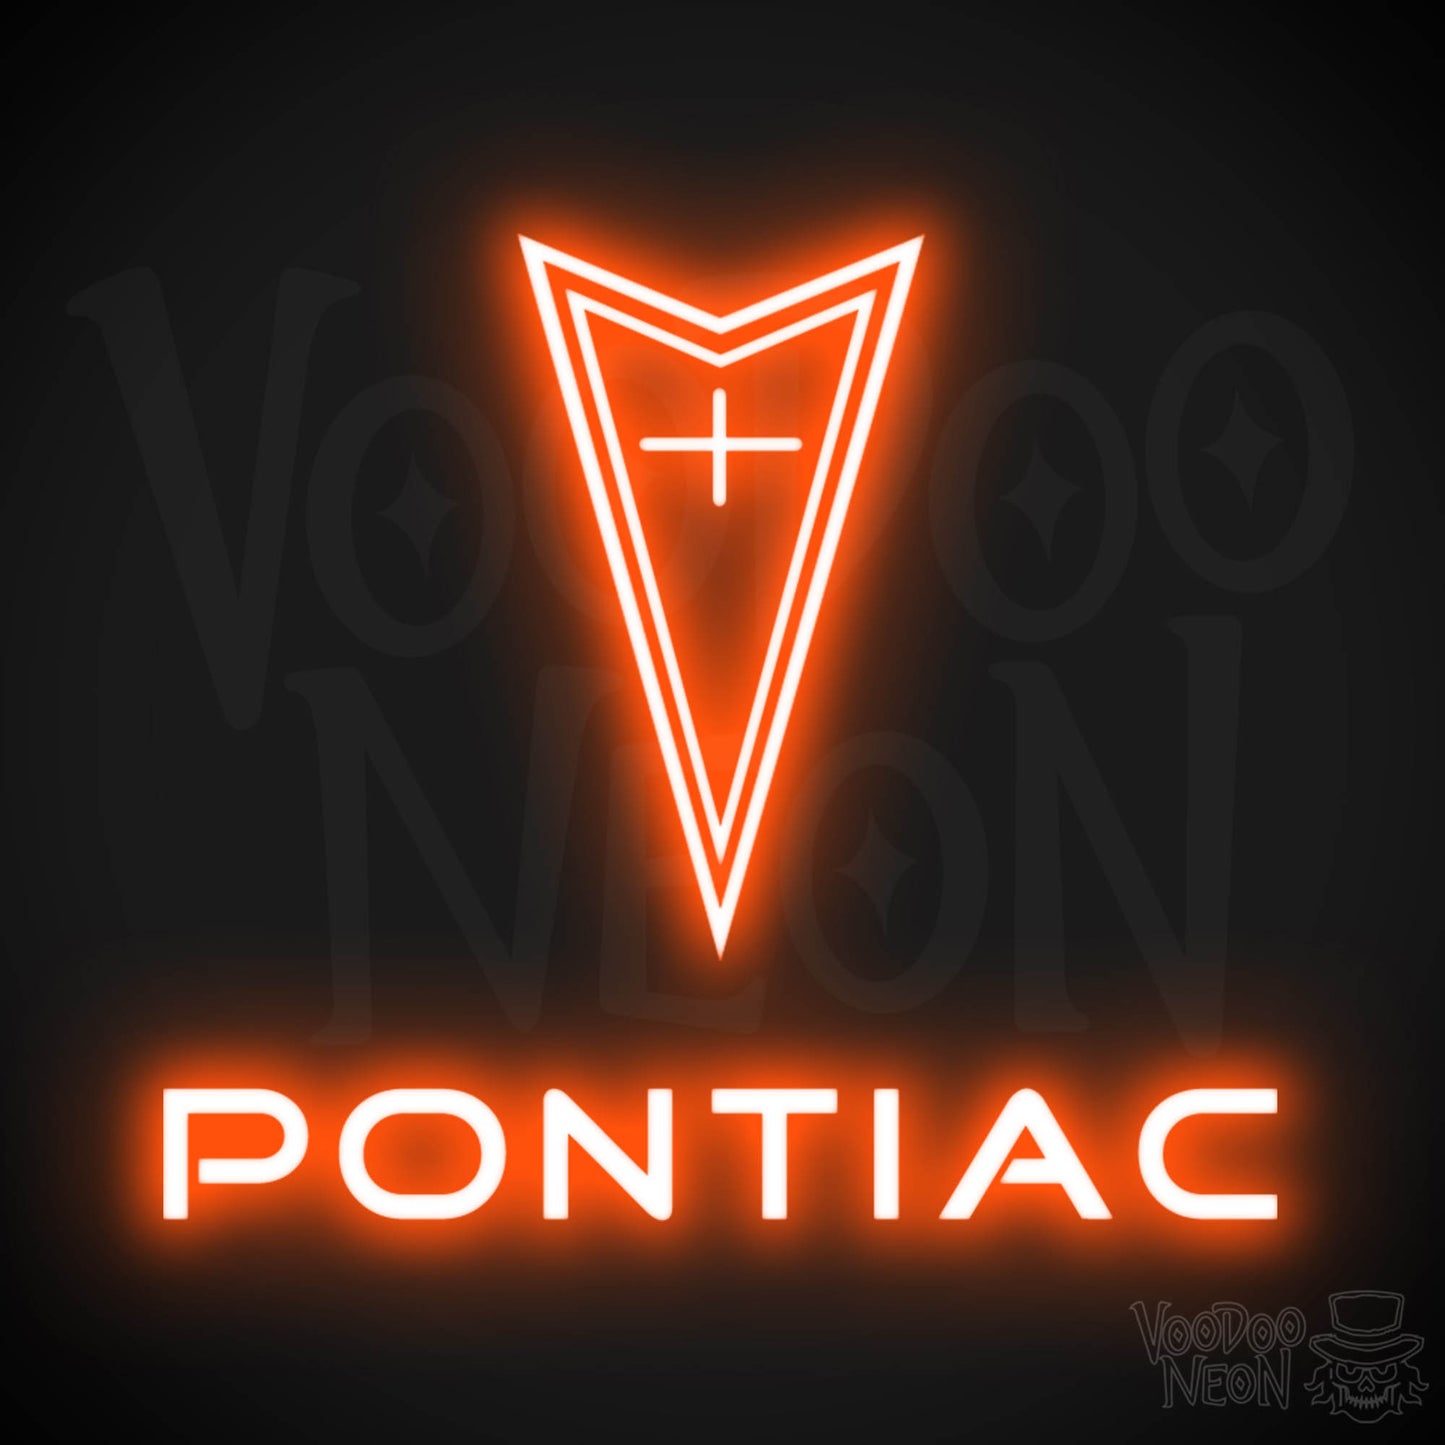 Pontiac Neon Sign - Pontiac Sign - Pontiac Decor - Wall Art - Color Orange